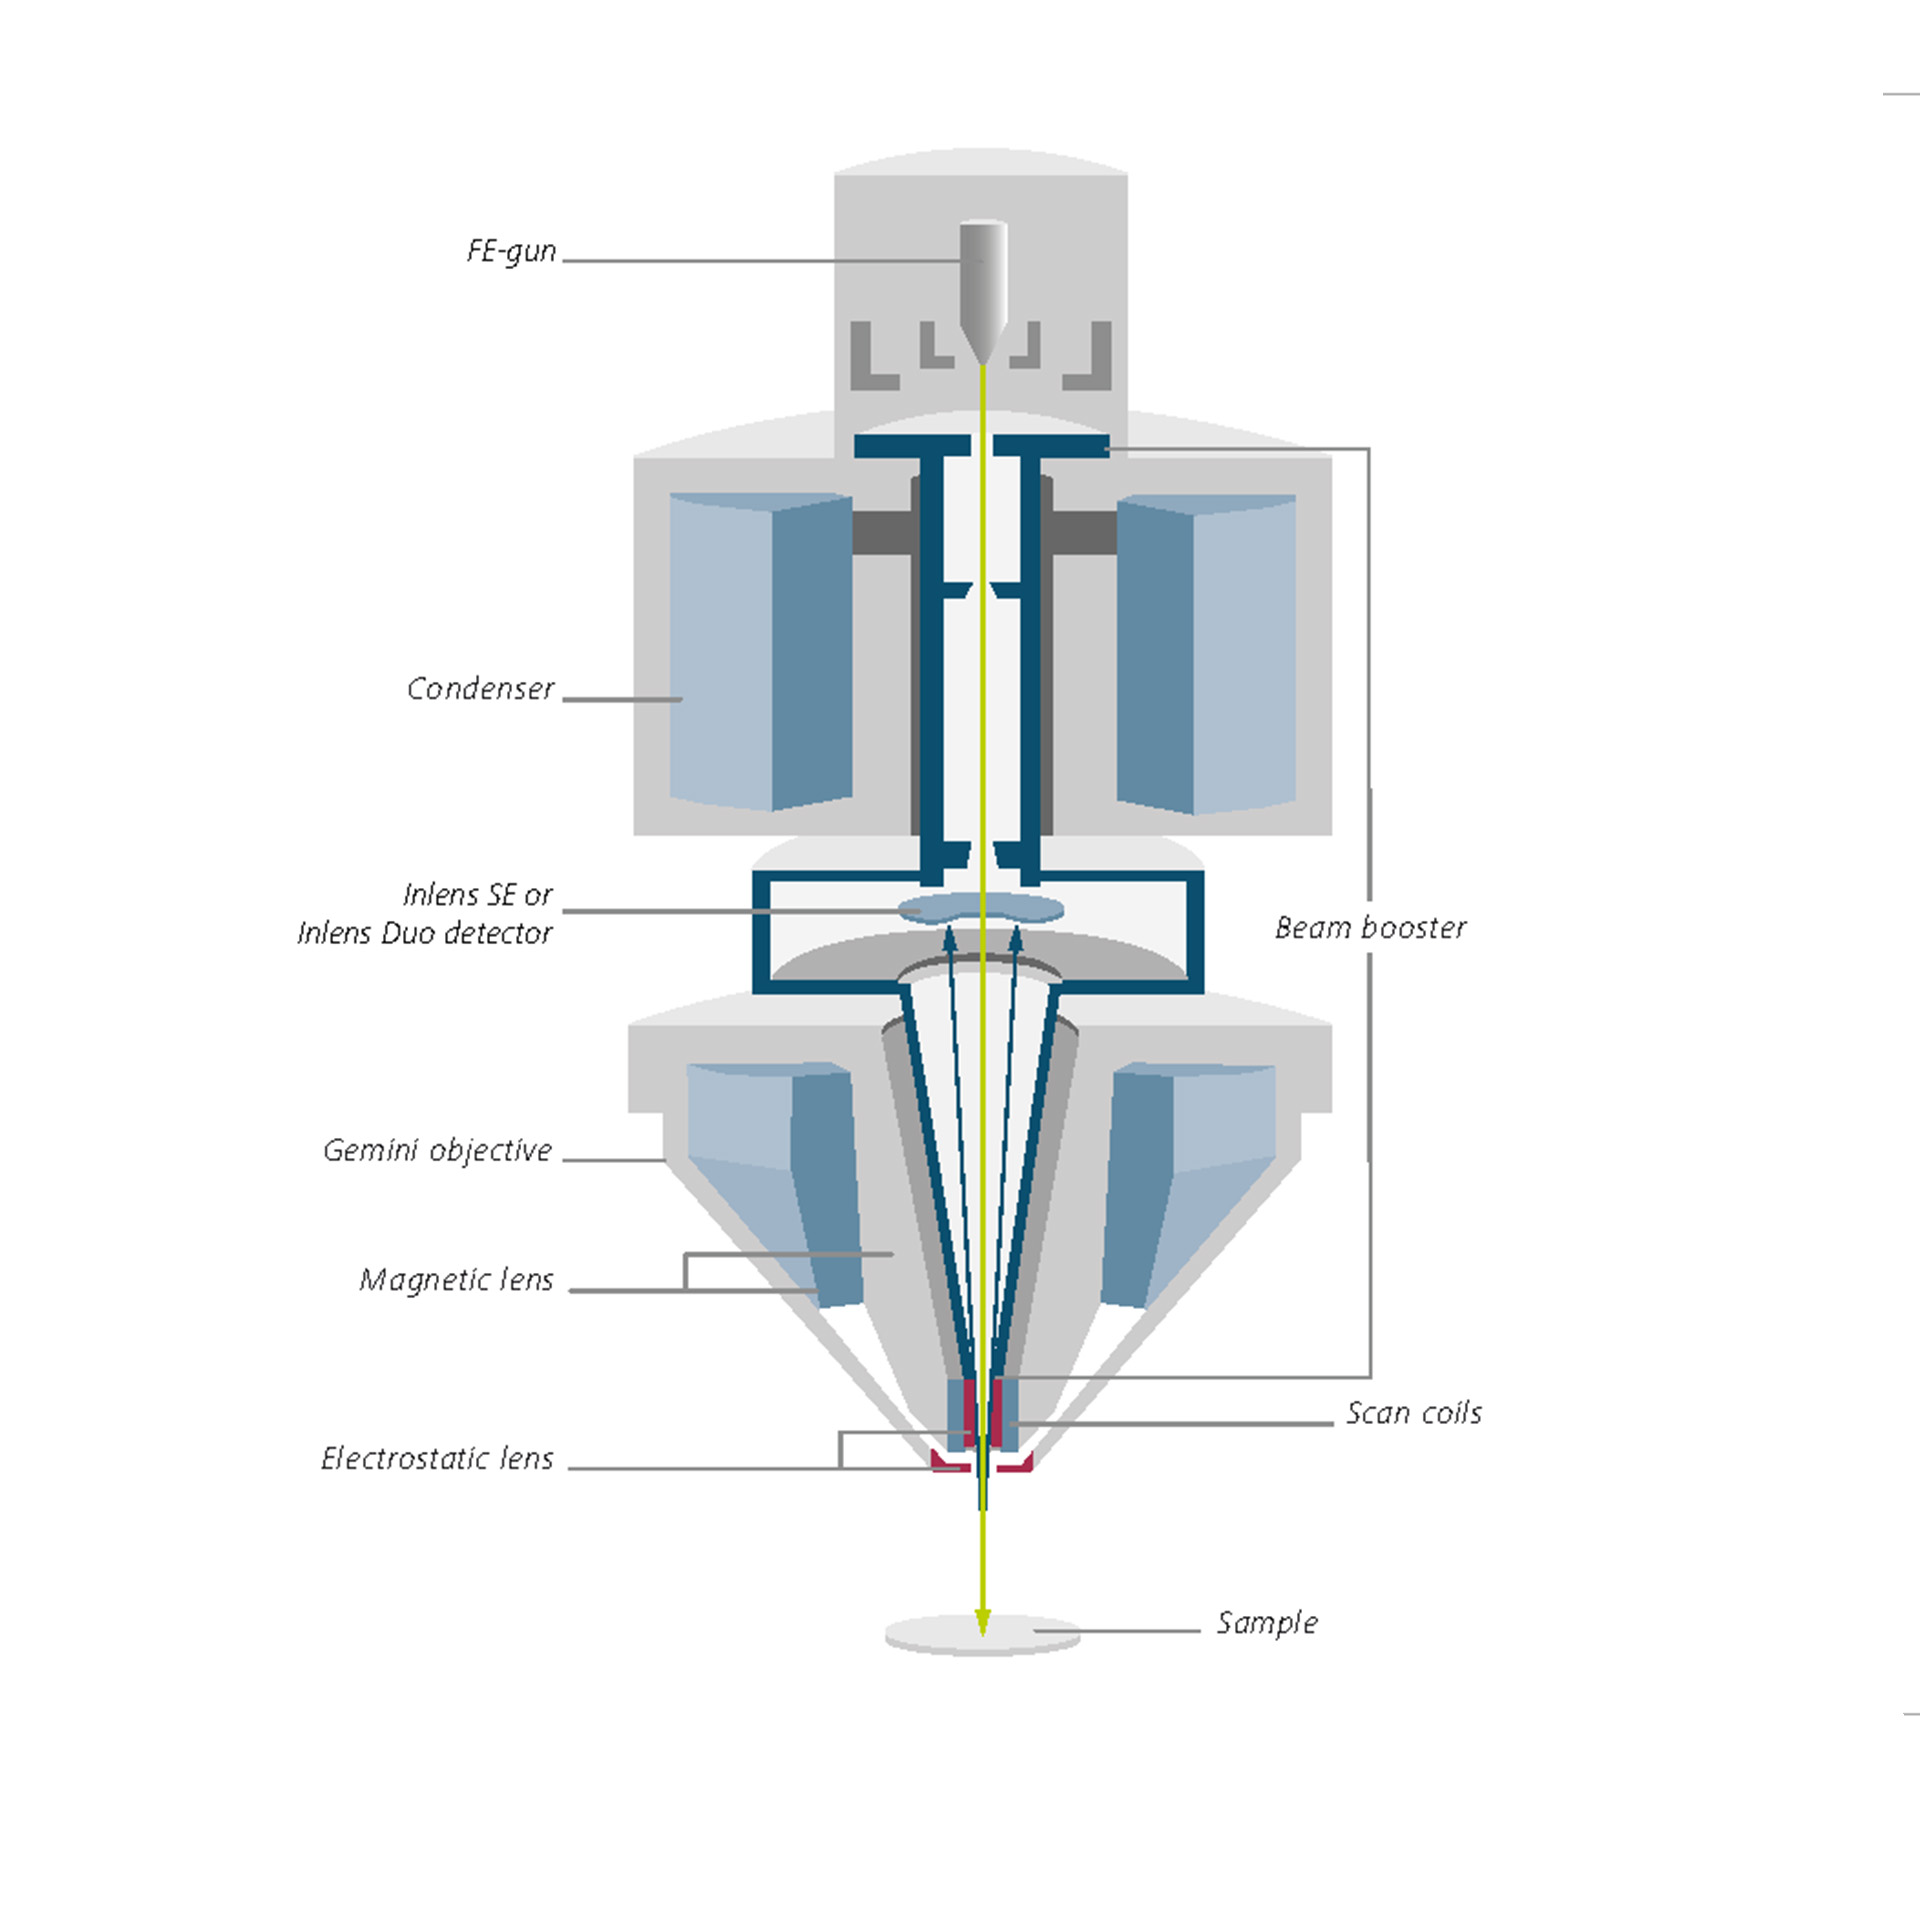 ビームブースター、Inlens検出器、Gemini対物レンズを搭載したGemini光学カラムの断面図。 